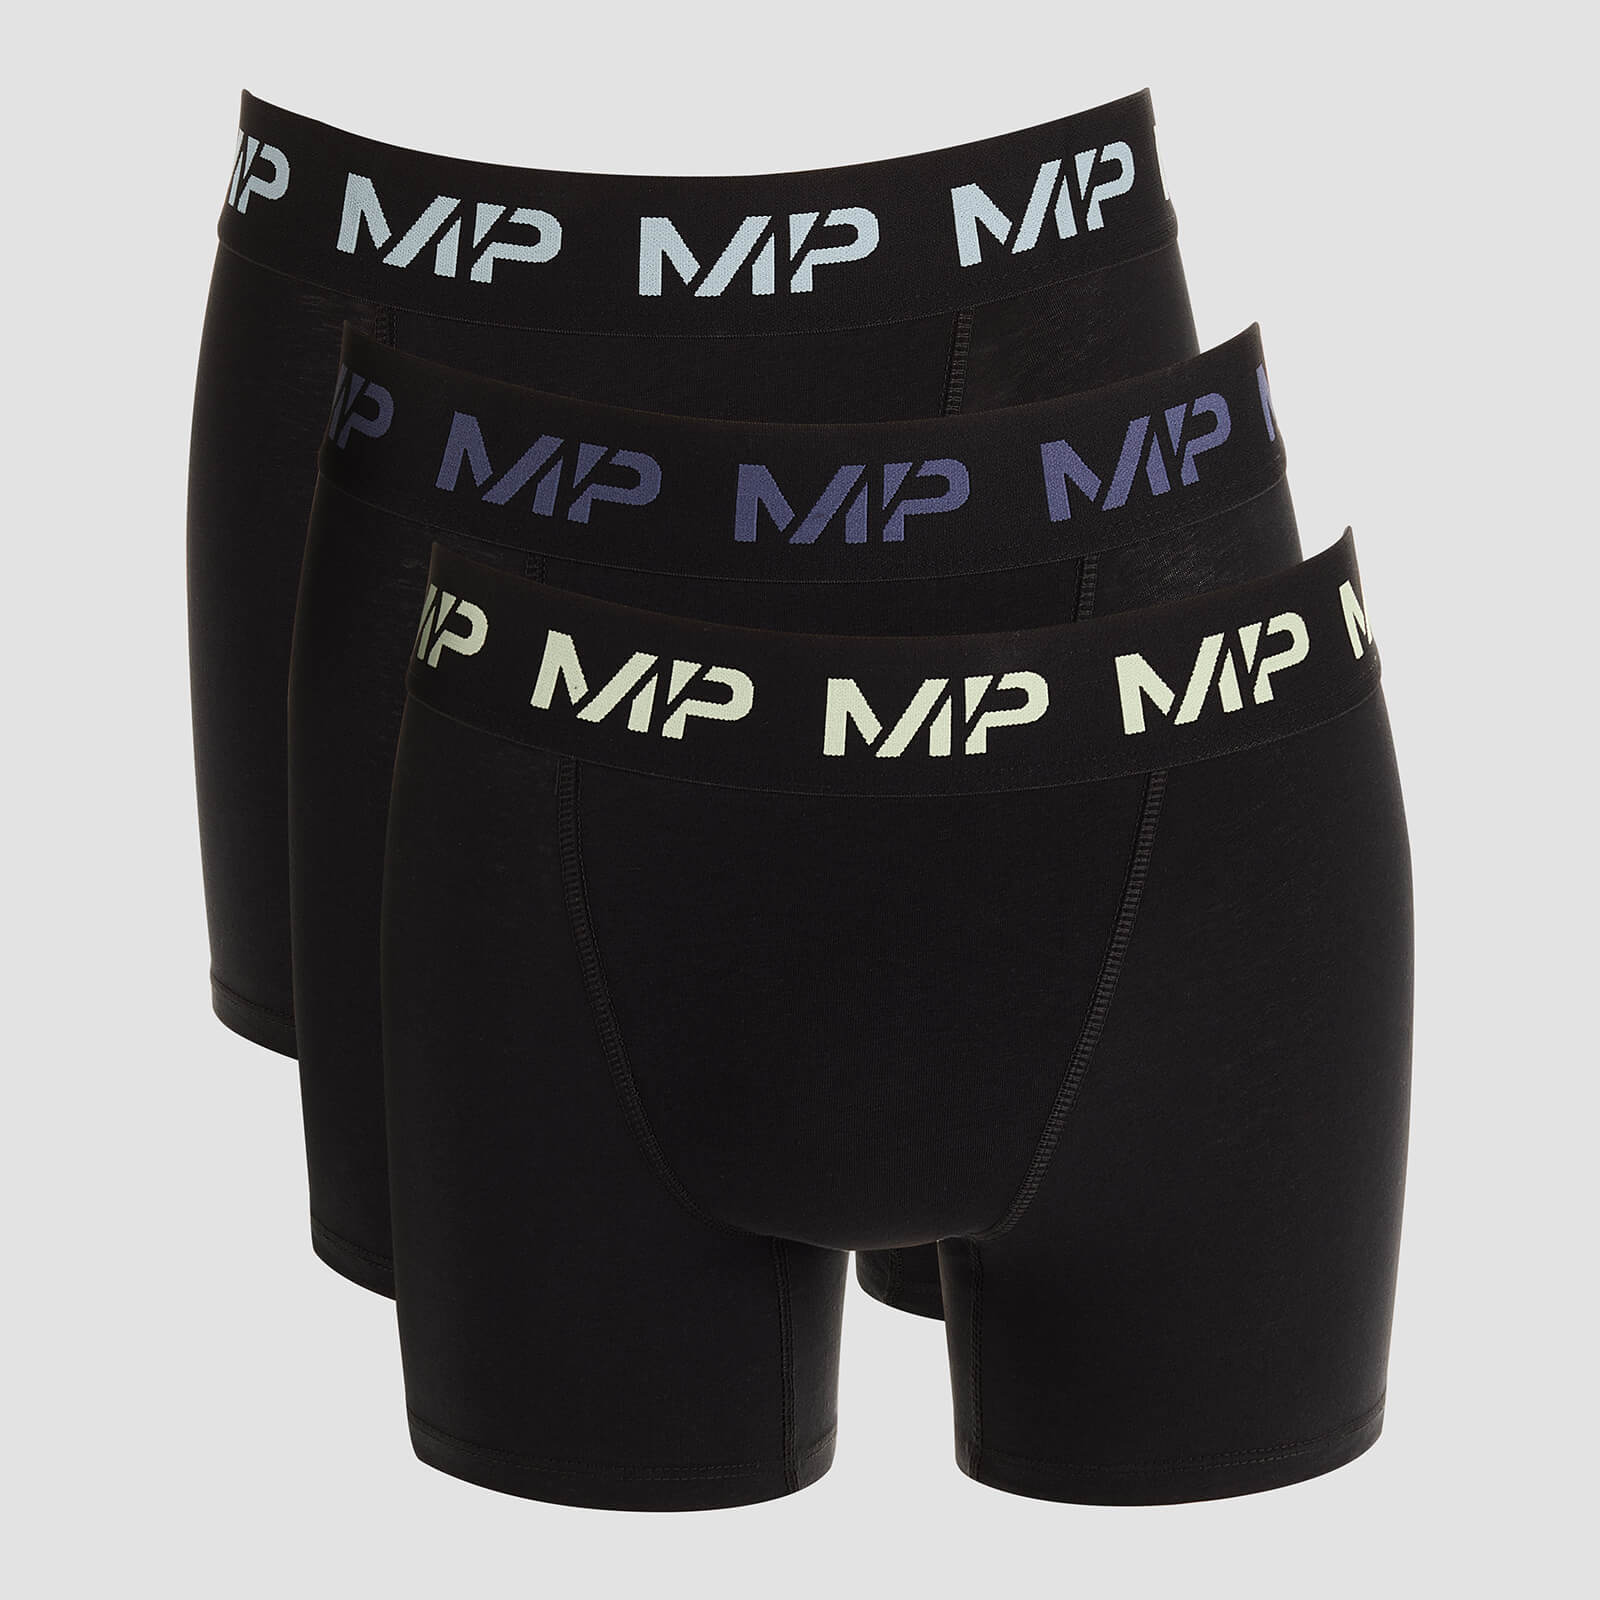 Quần lót Boxer có logo Màu dành cho Nam giới của MP (3 Cái) - Màu đen/Màu xanh lá lạnh/Màu xanh thép/Màu xanh đá